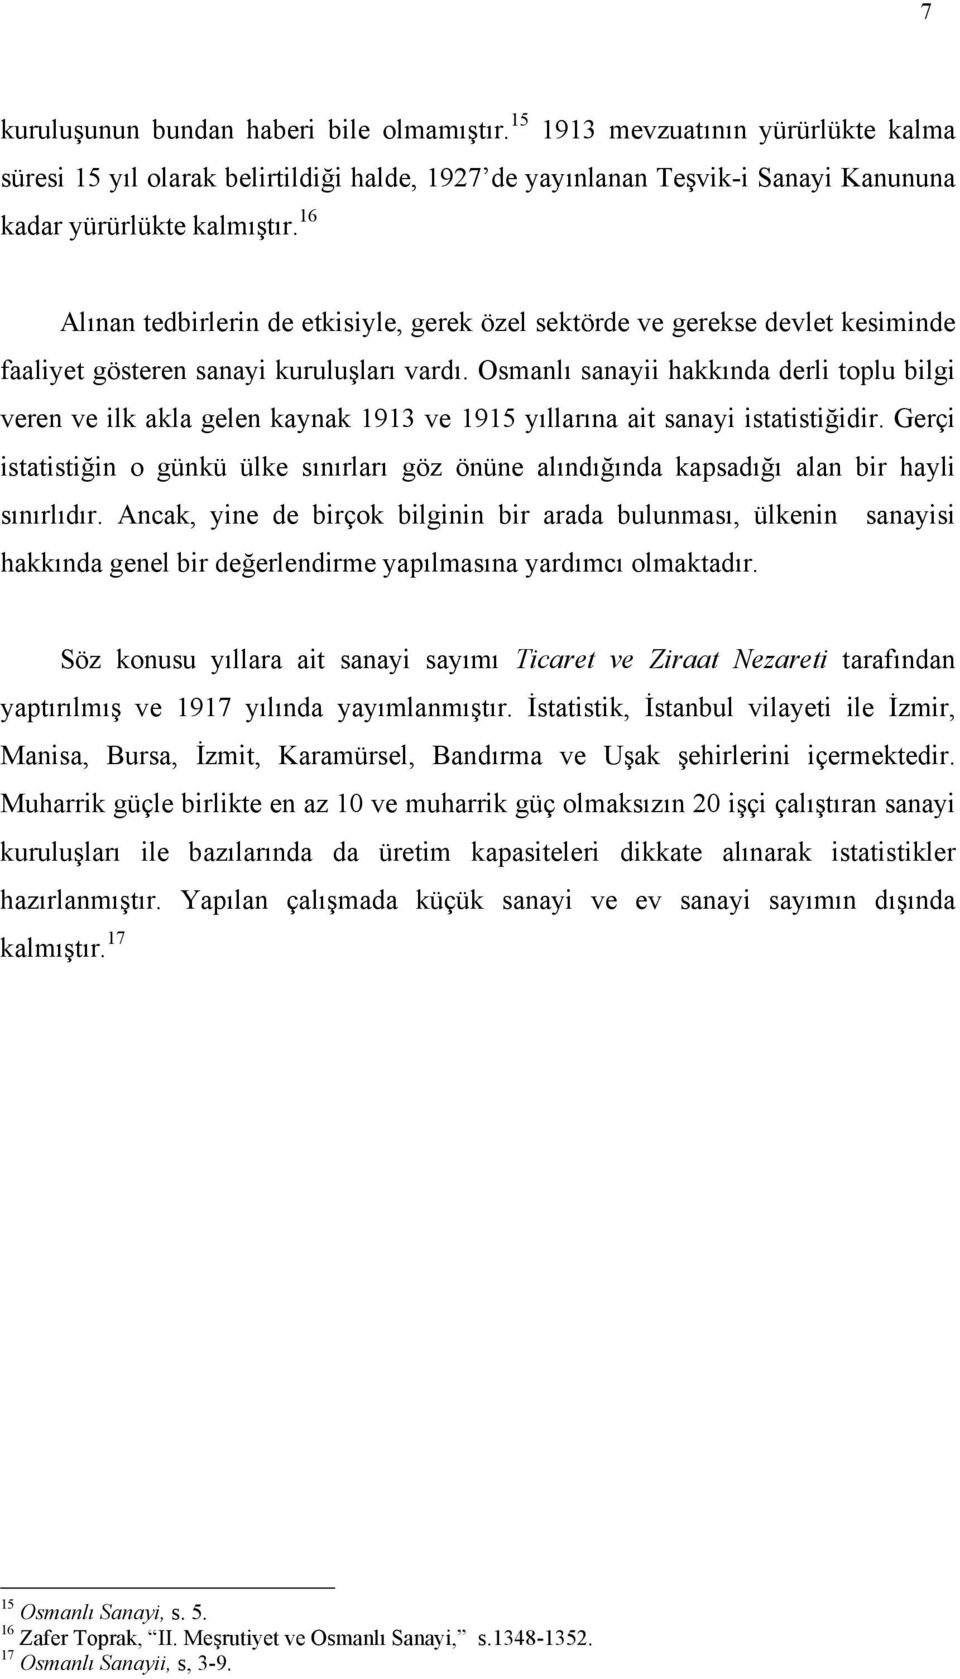 Osmanlõ sanayii hakkõnda derli toplu bilgi veren ve ilk akla gelen kaynak 1913 ve 1915 yõllarõna ait sanayi istatistiğidir.